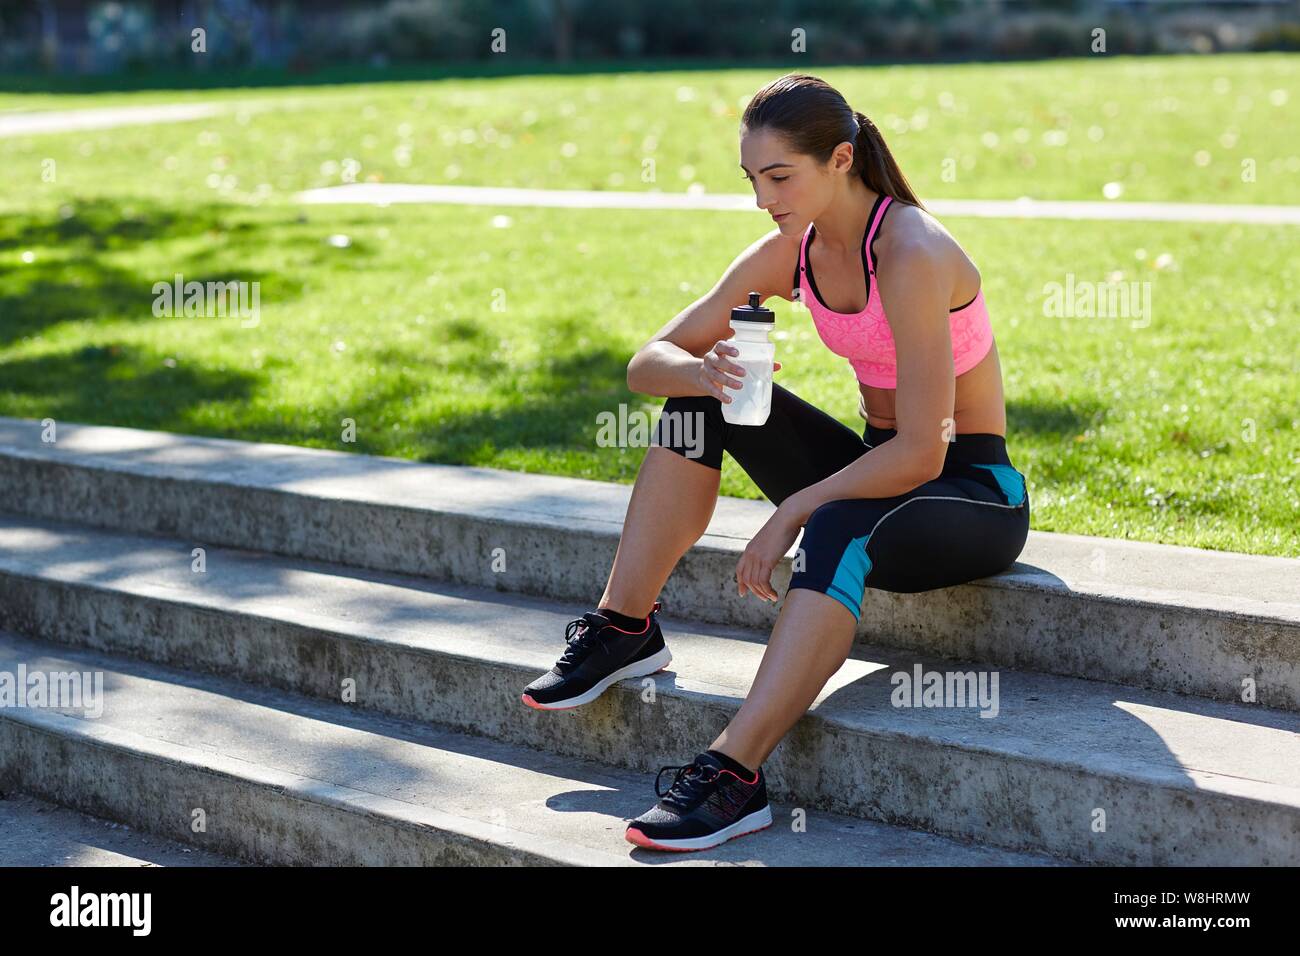 Jeune femme en tenue de sport reposant sur des mesures avec une bouteille d'eau. Banque D'Images